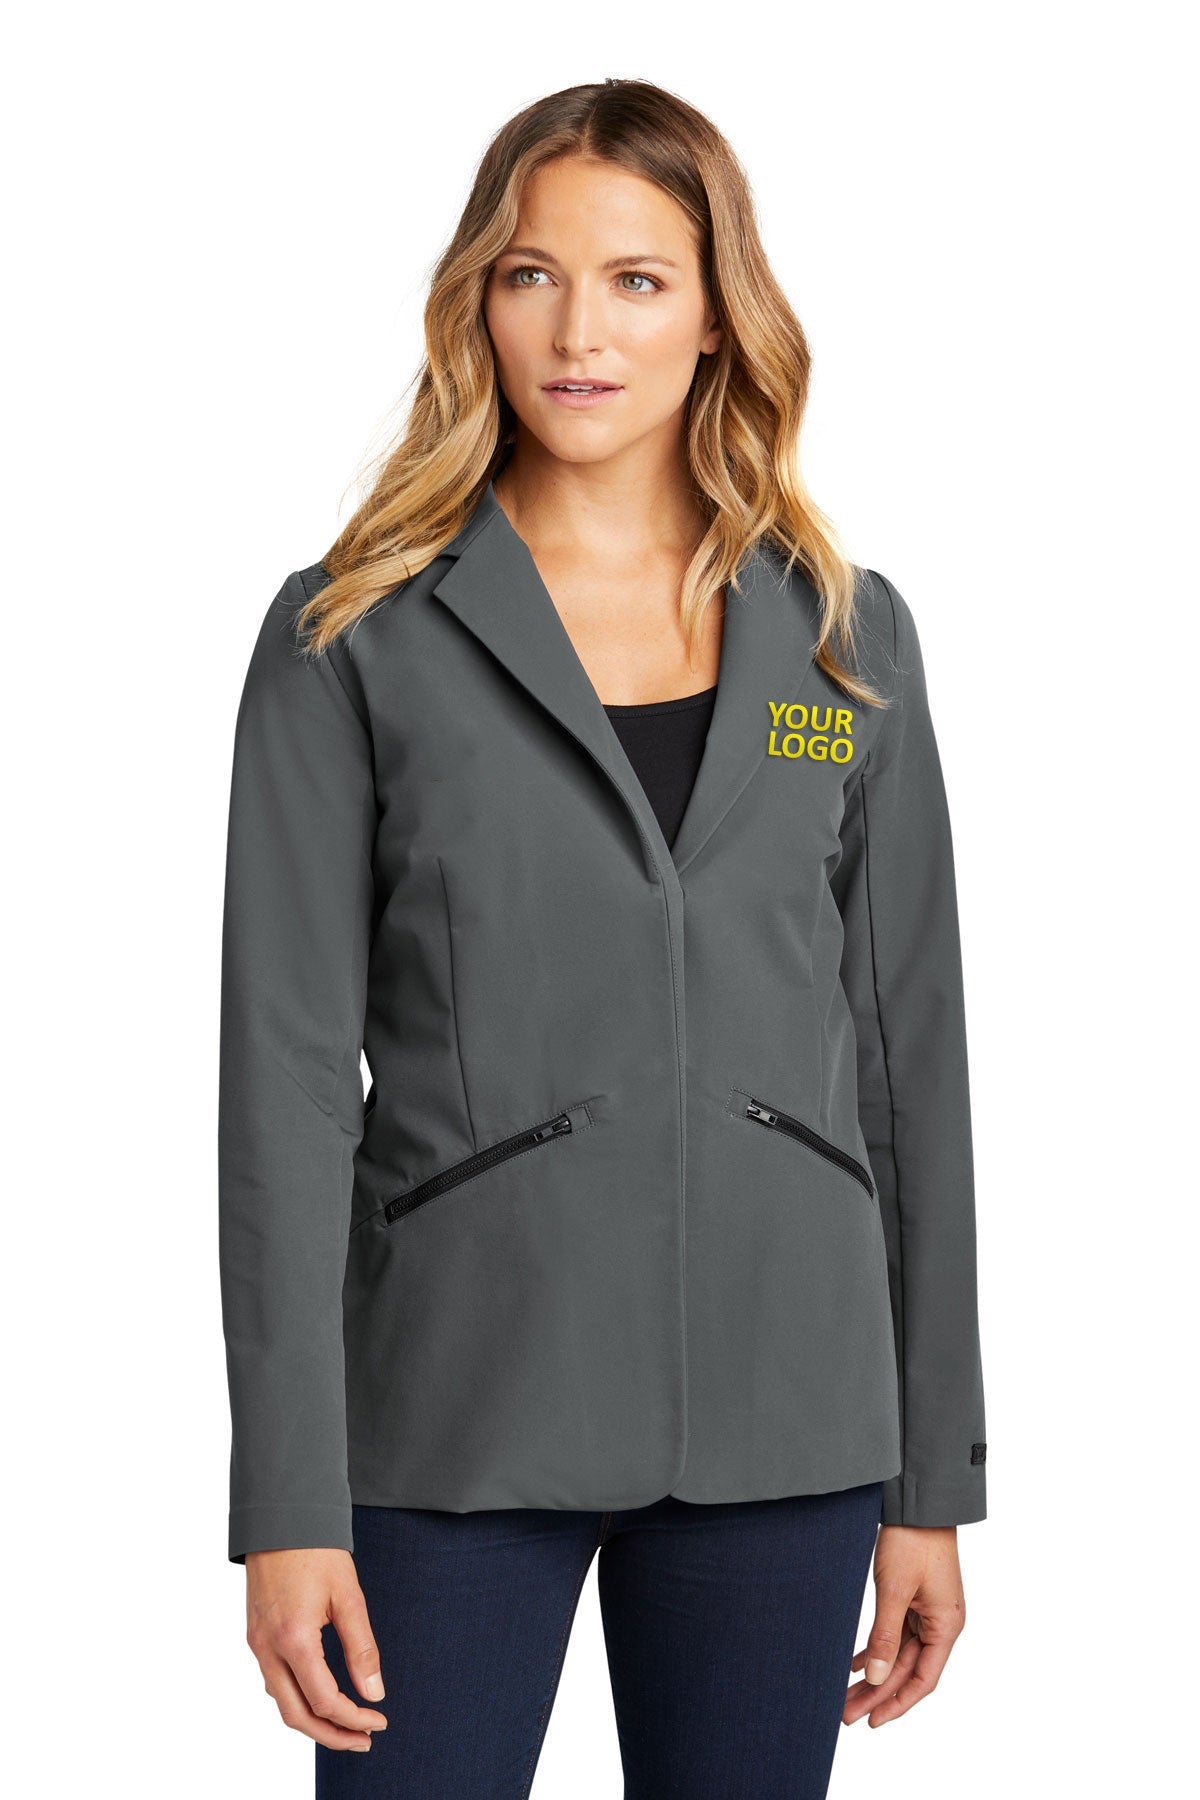 OGIO Tarmac Grey LOG824 company jackets with logo